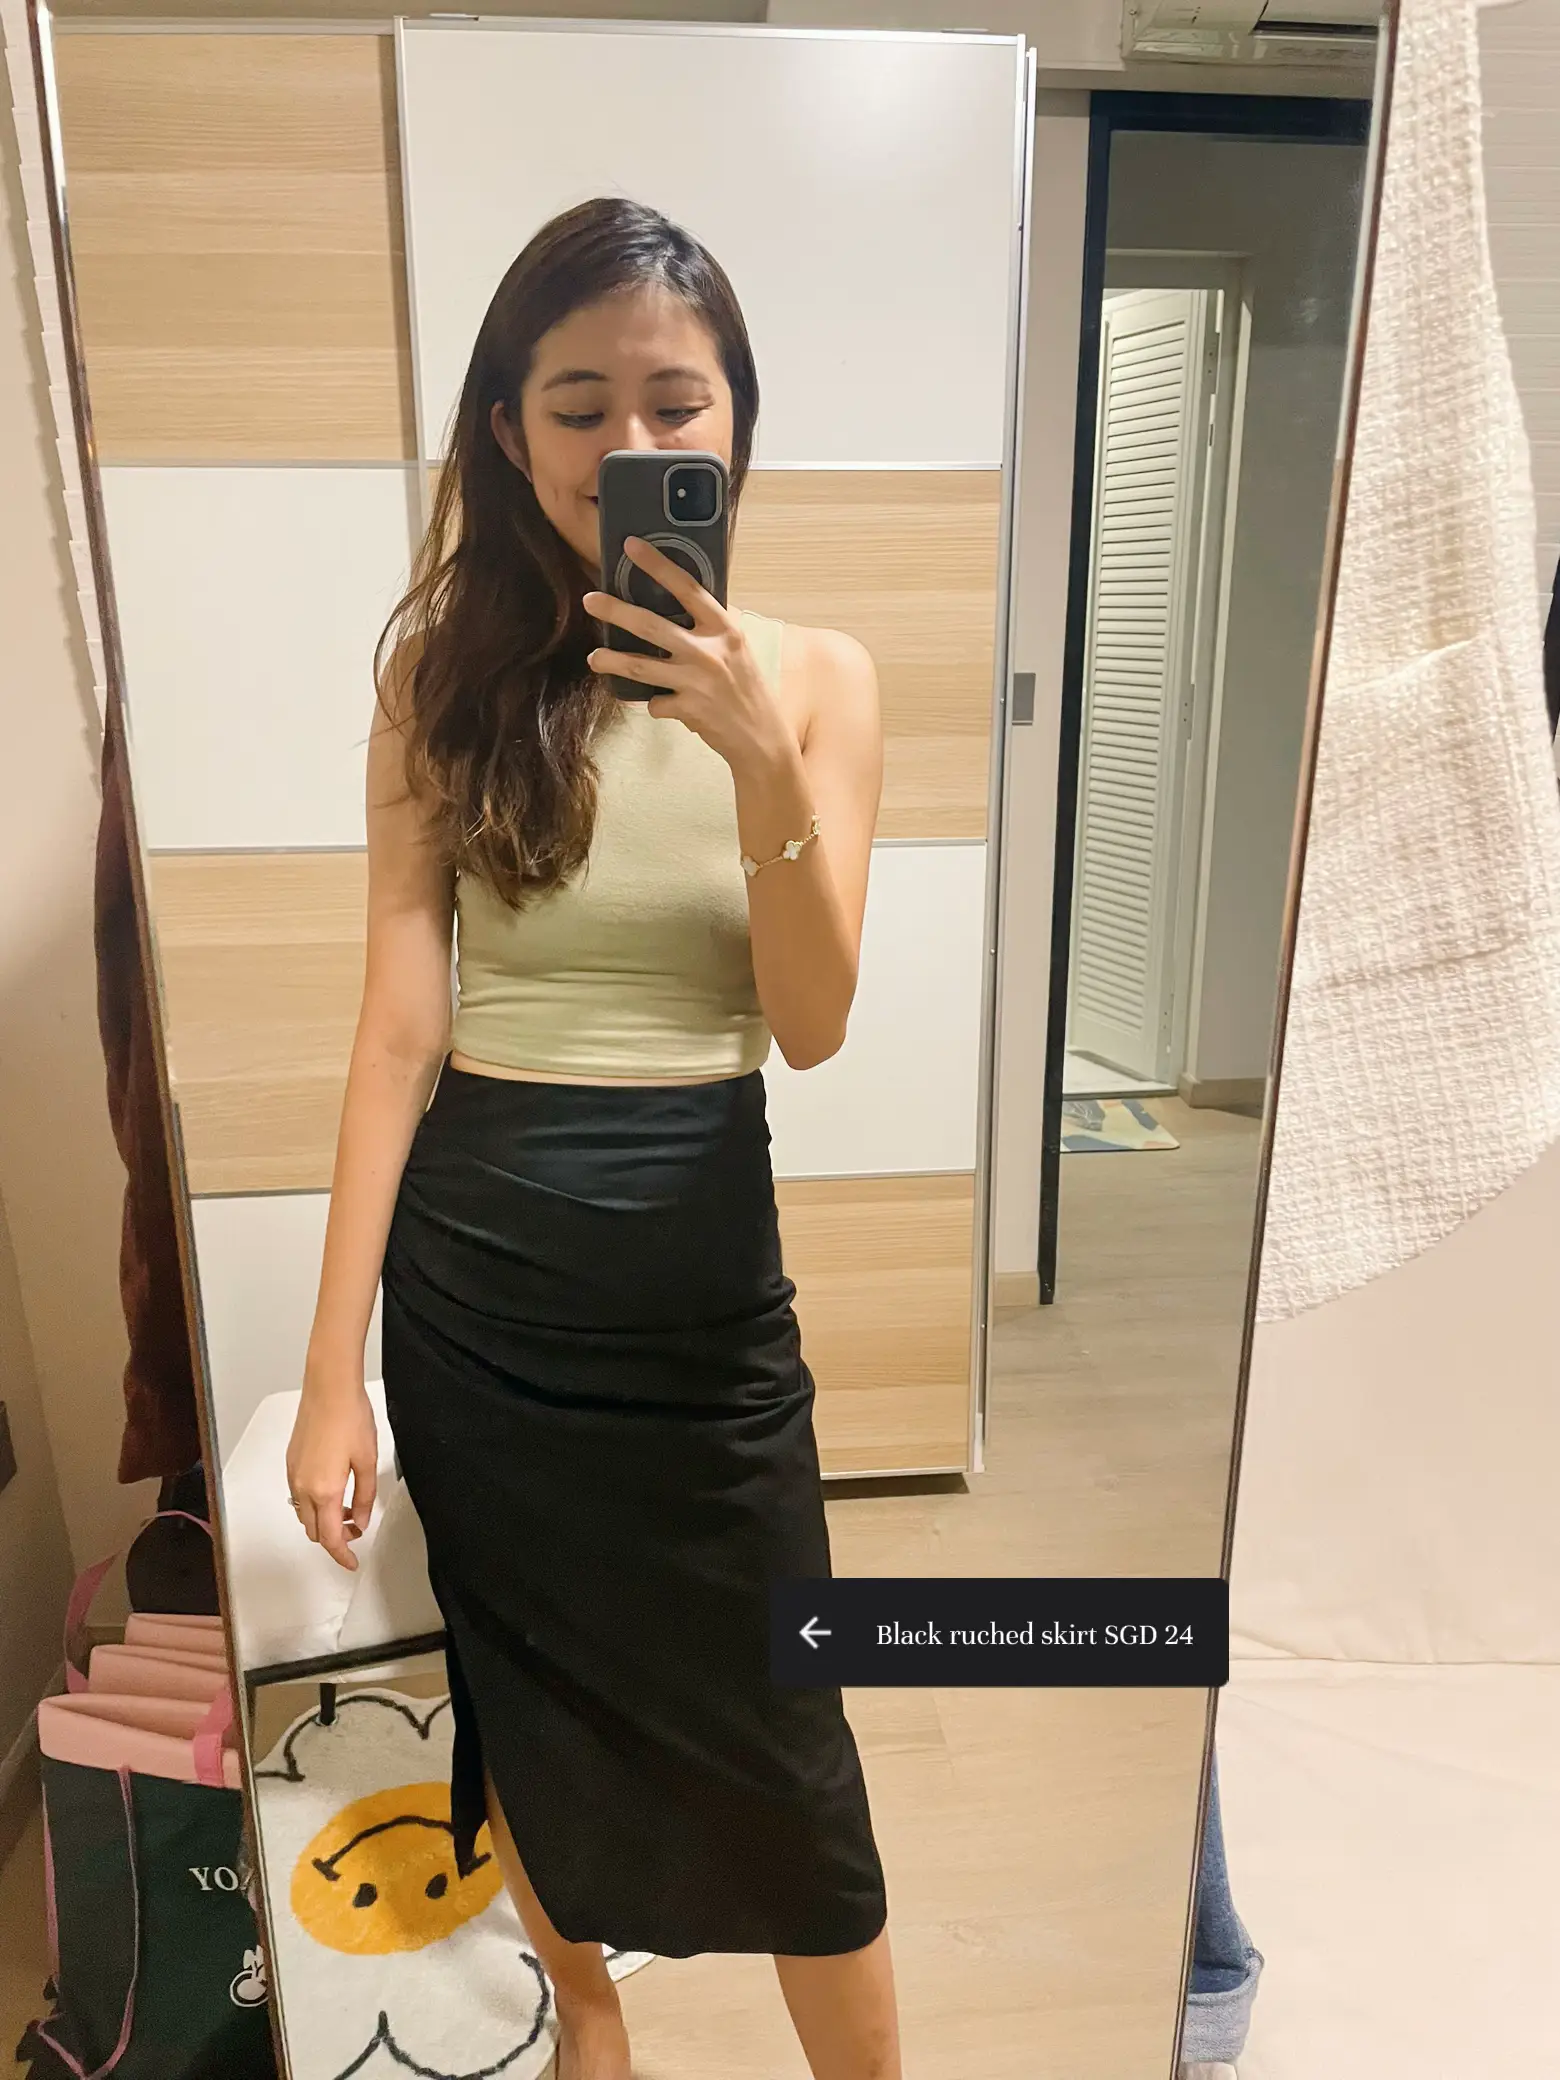 Haremi Linen Low-Rise Slip Skirt